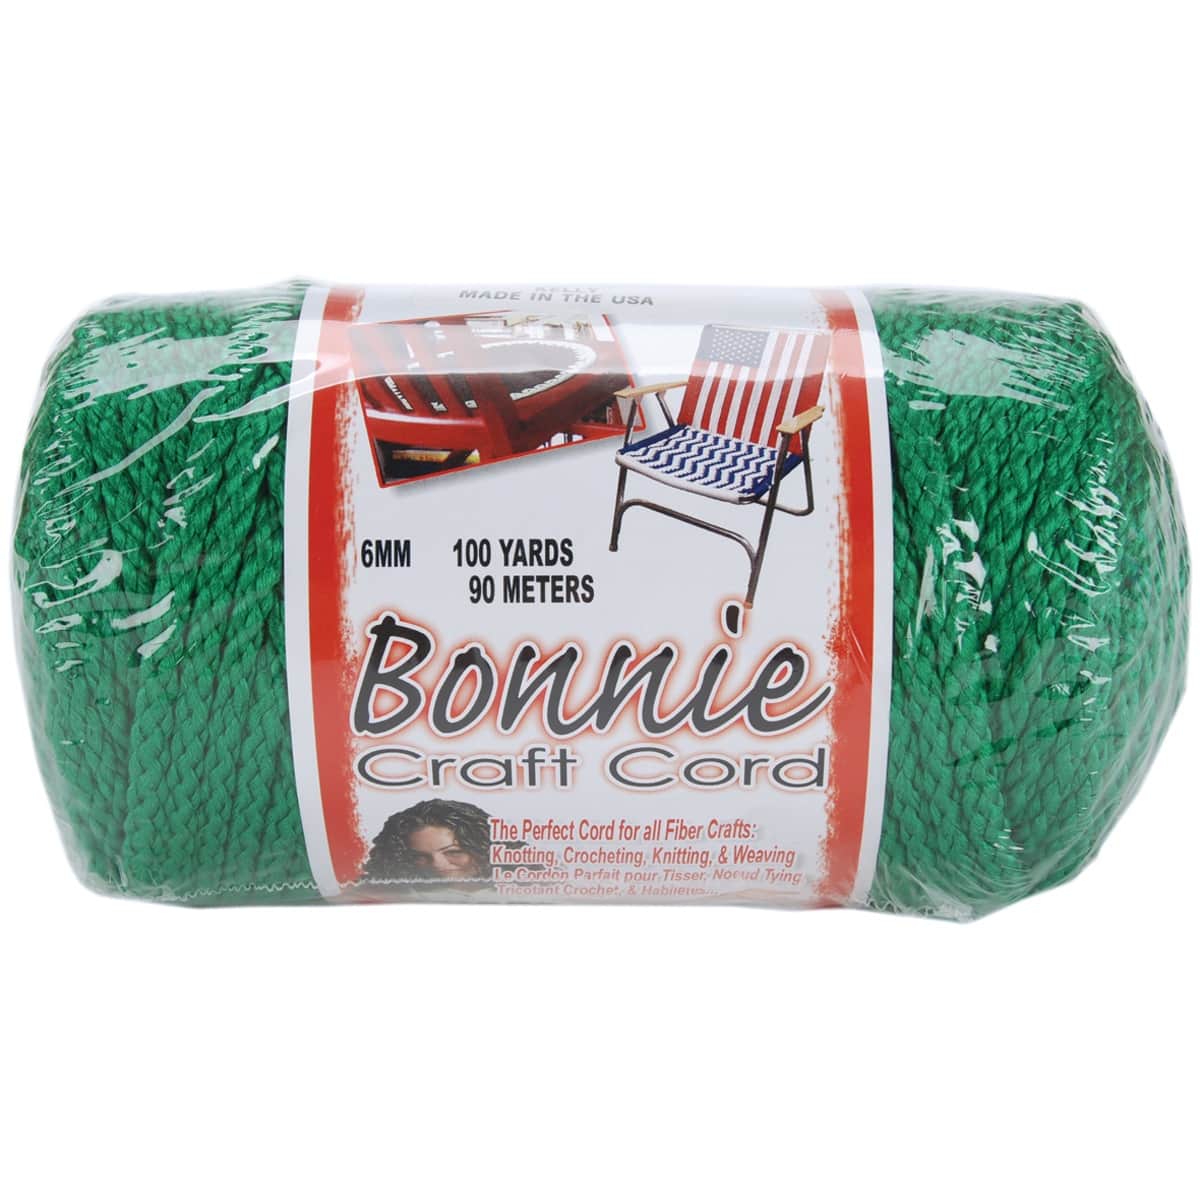 Bonnie Craft Cord 6MM – Rich Mountain Fiber Co